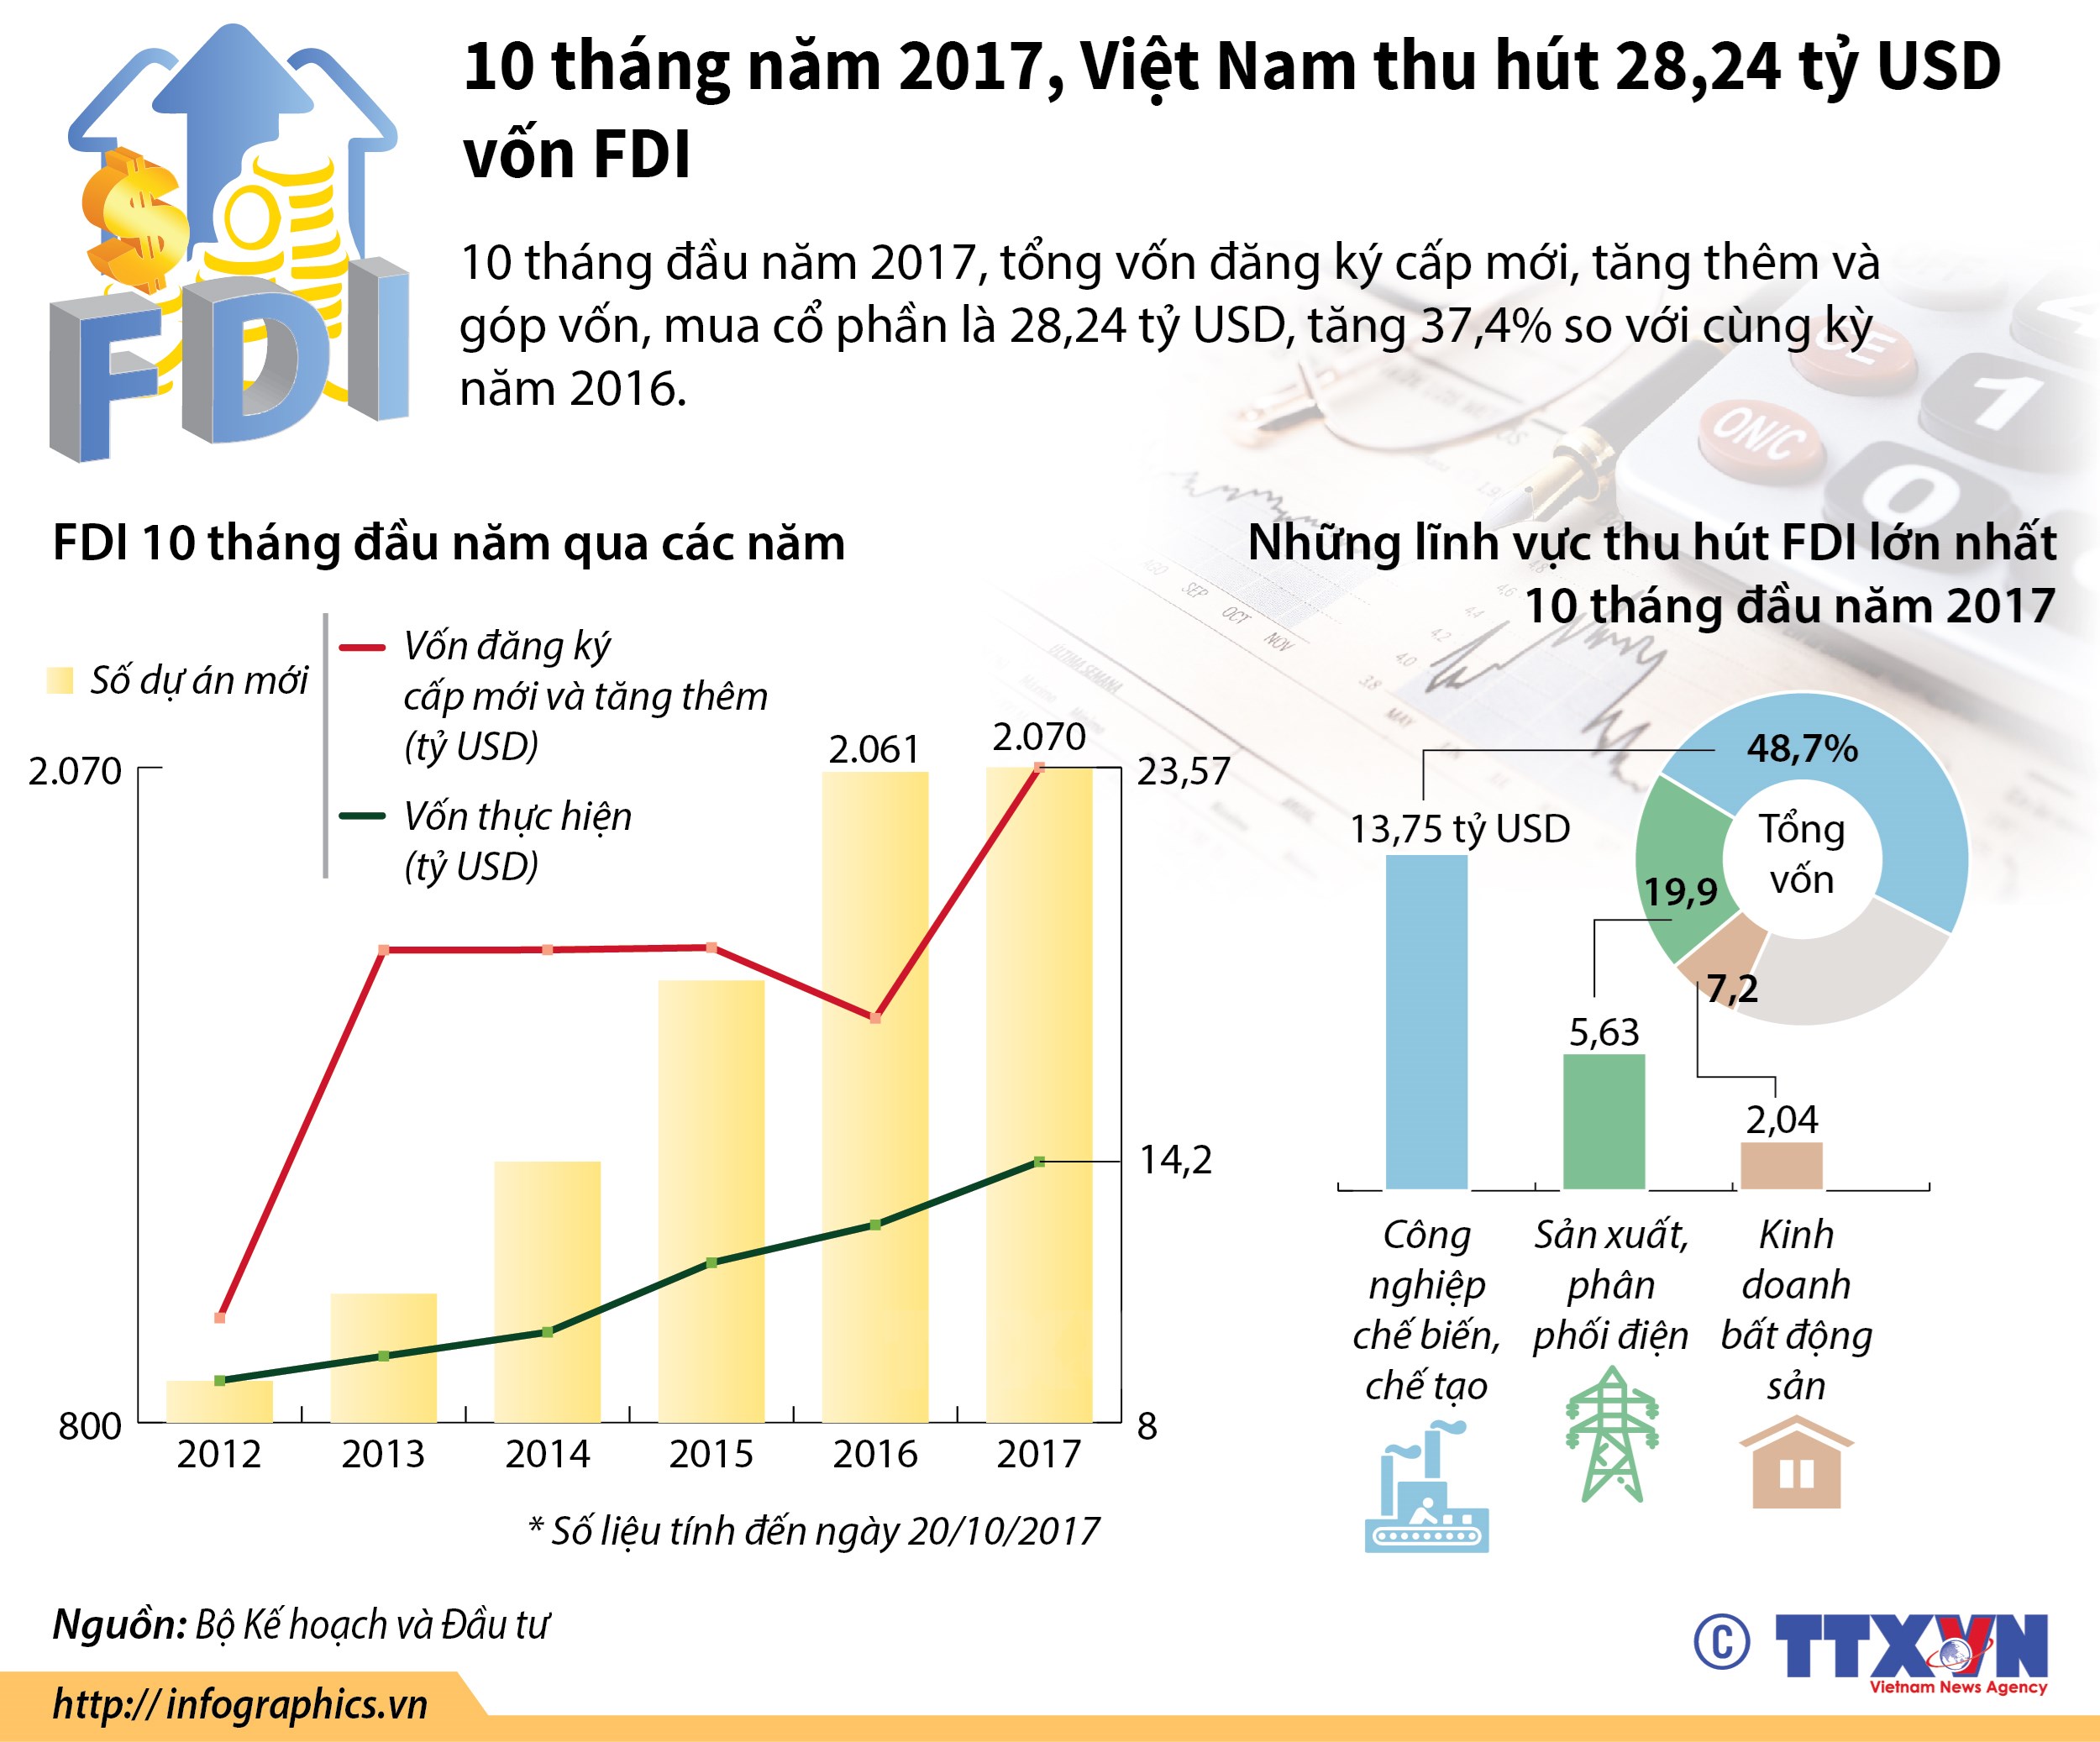 Việt Nam thu hút gần 29 tỷ USD vốn FDI trong 10 tháng